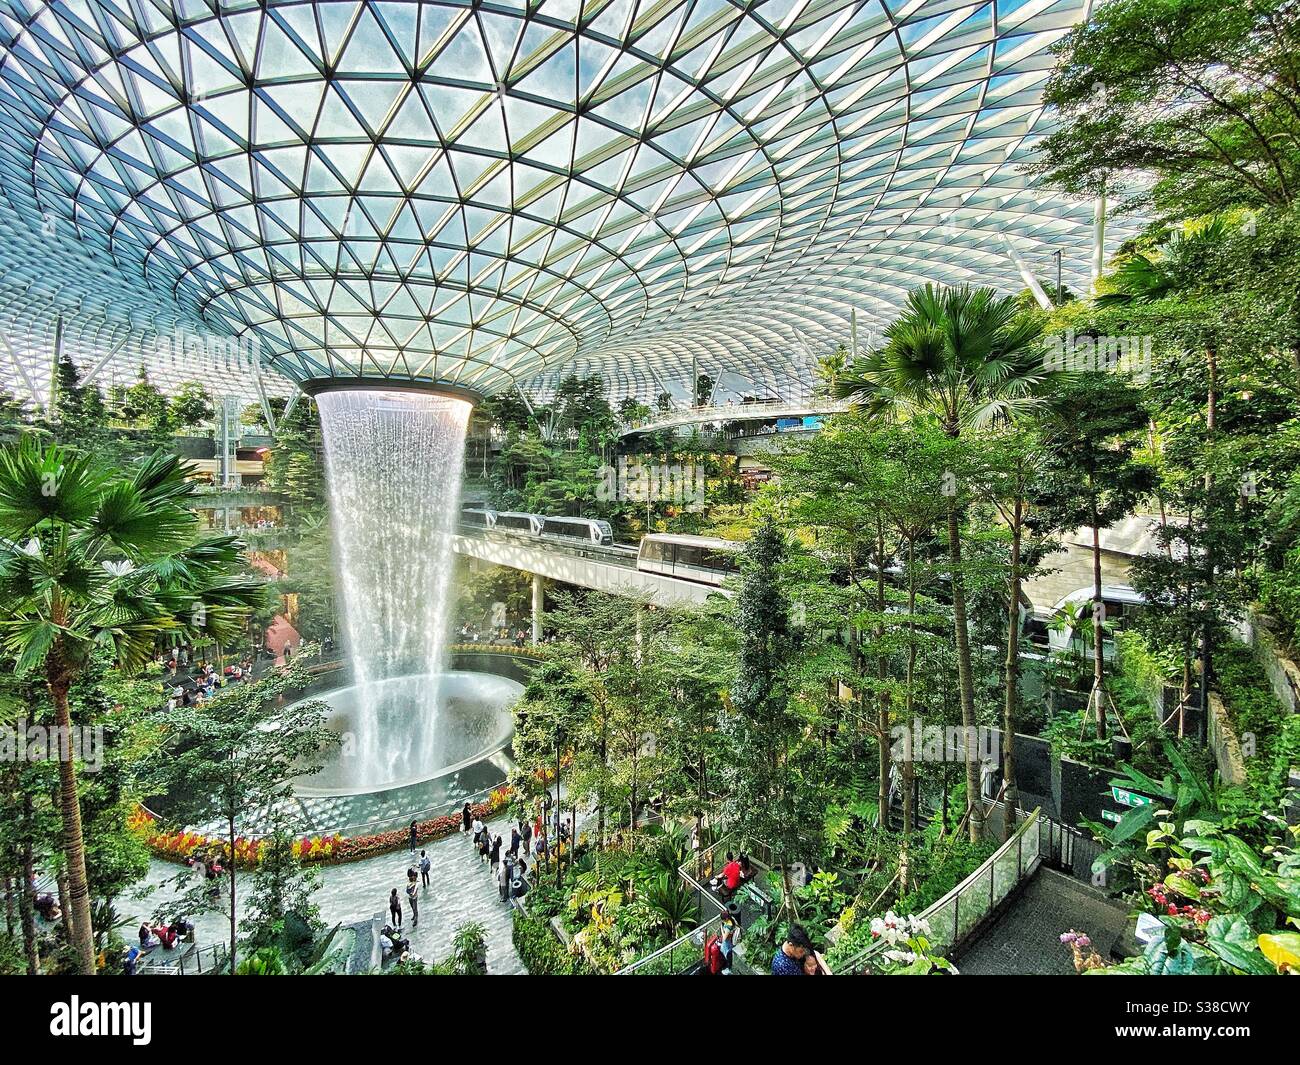 Bringen Sie die Grüns innen am Jewel-Changi Airport, Singapur Stockfoto